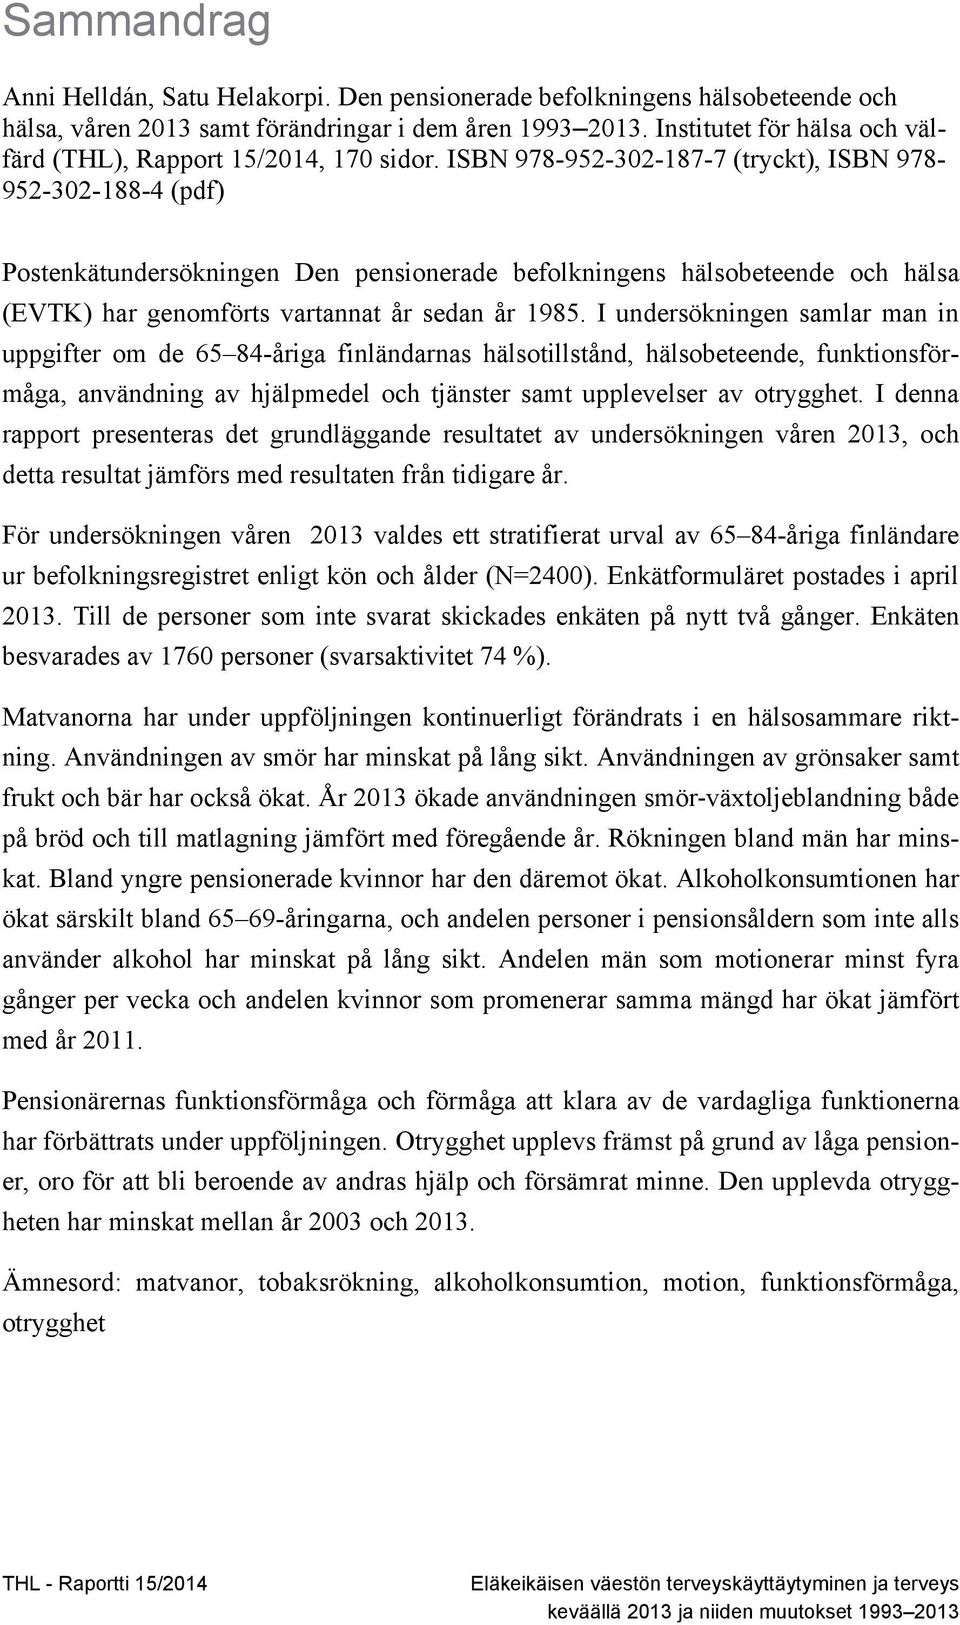 ISBN 978-952-302-187-7 (tryckt), ISBN 978-952-302-188-4 (pdf) Postenkätundersökningen Den pensionerade befolkningens hälsobeteende och hälsa (EVTK) har genomförts vartannat år sedan år 1985.